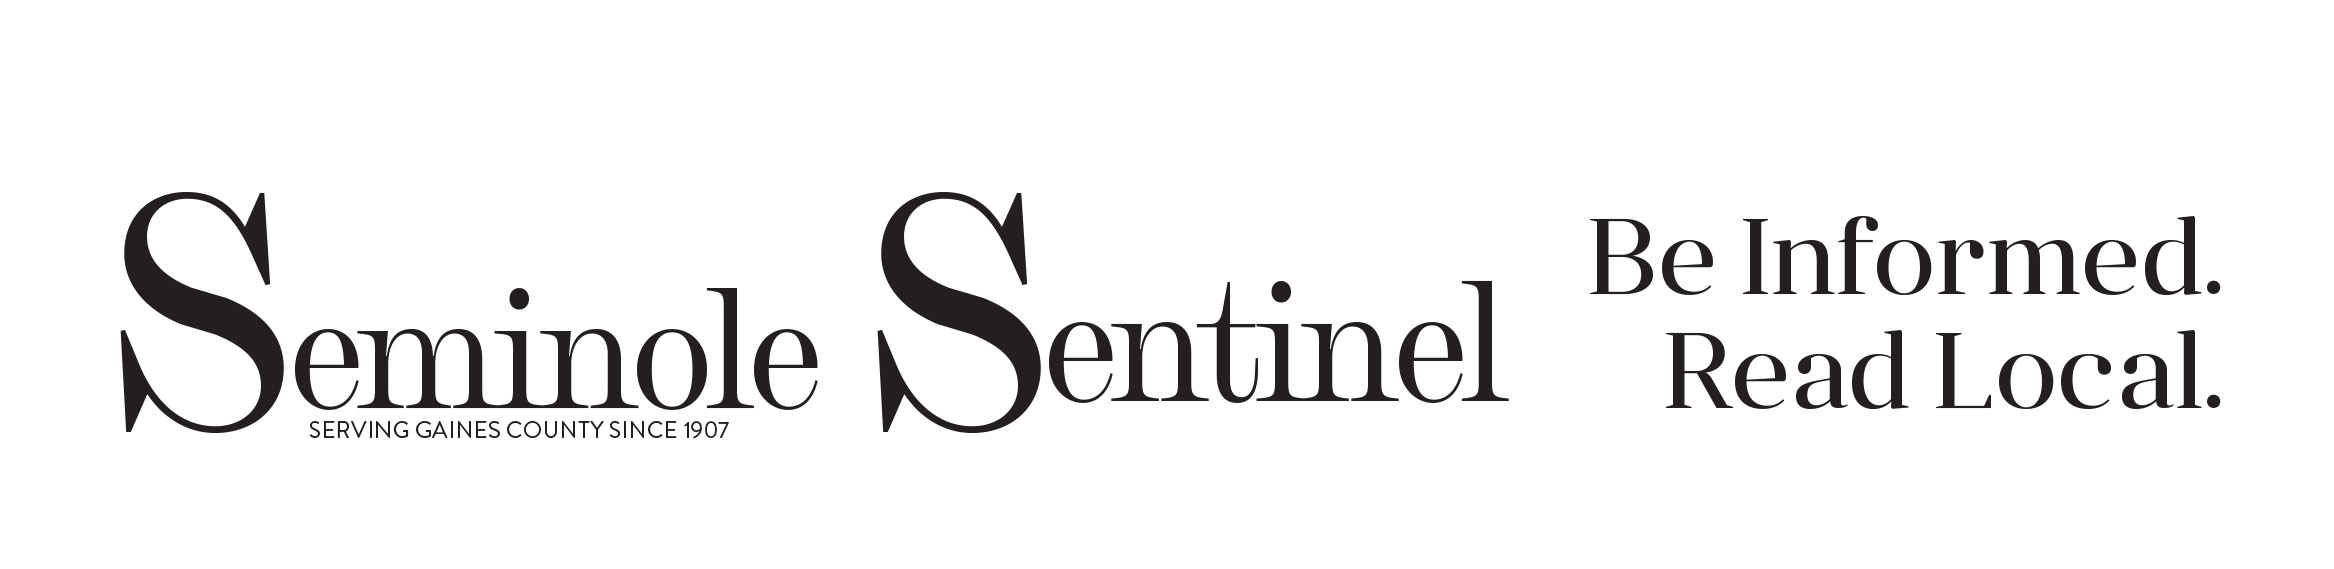 Seminole Sentinel Home